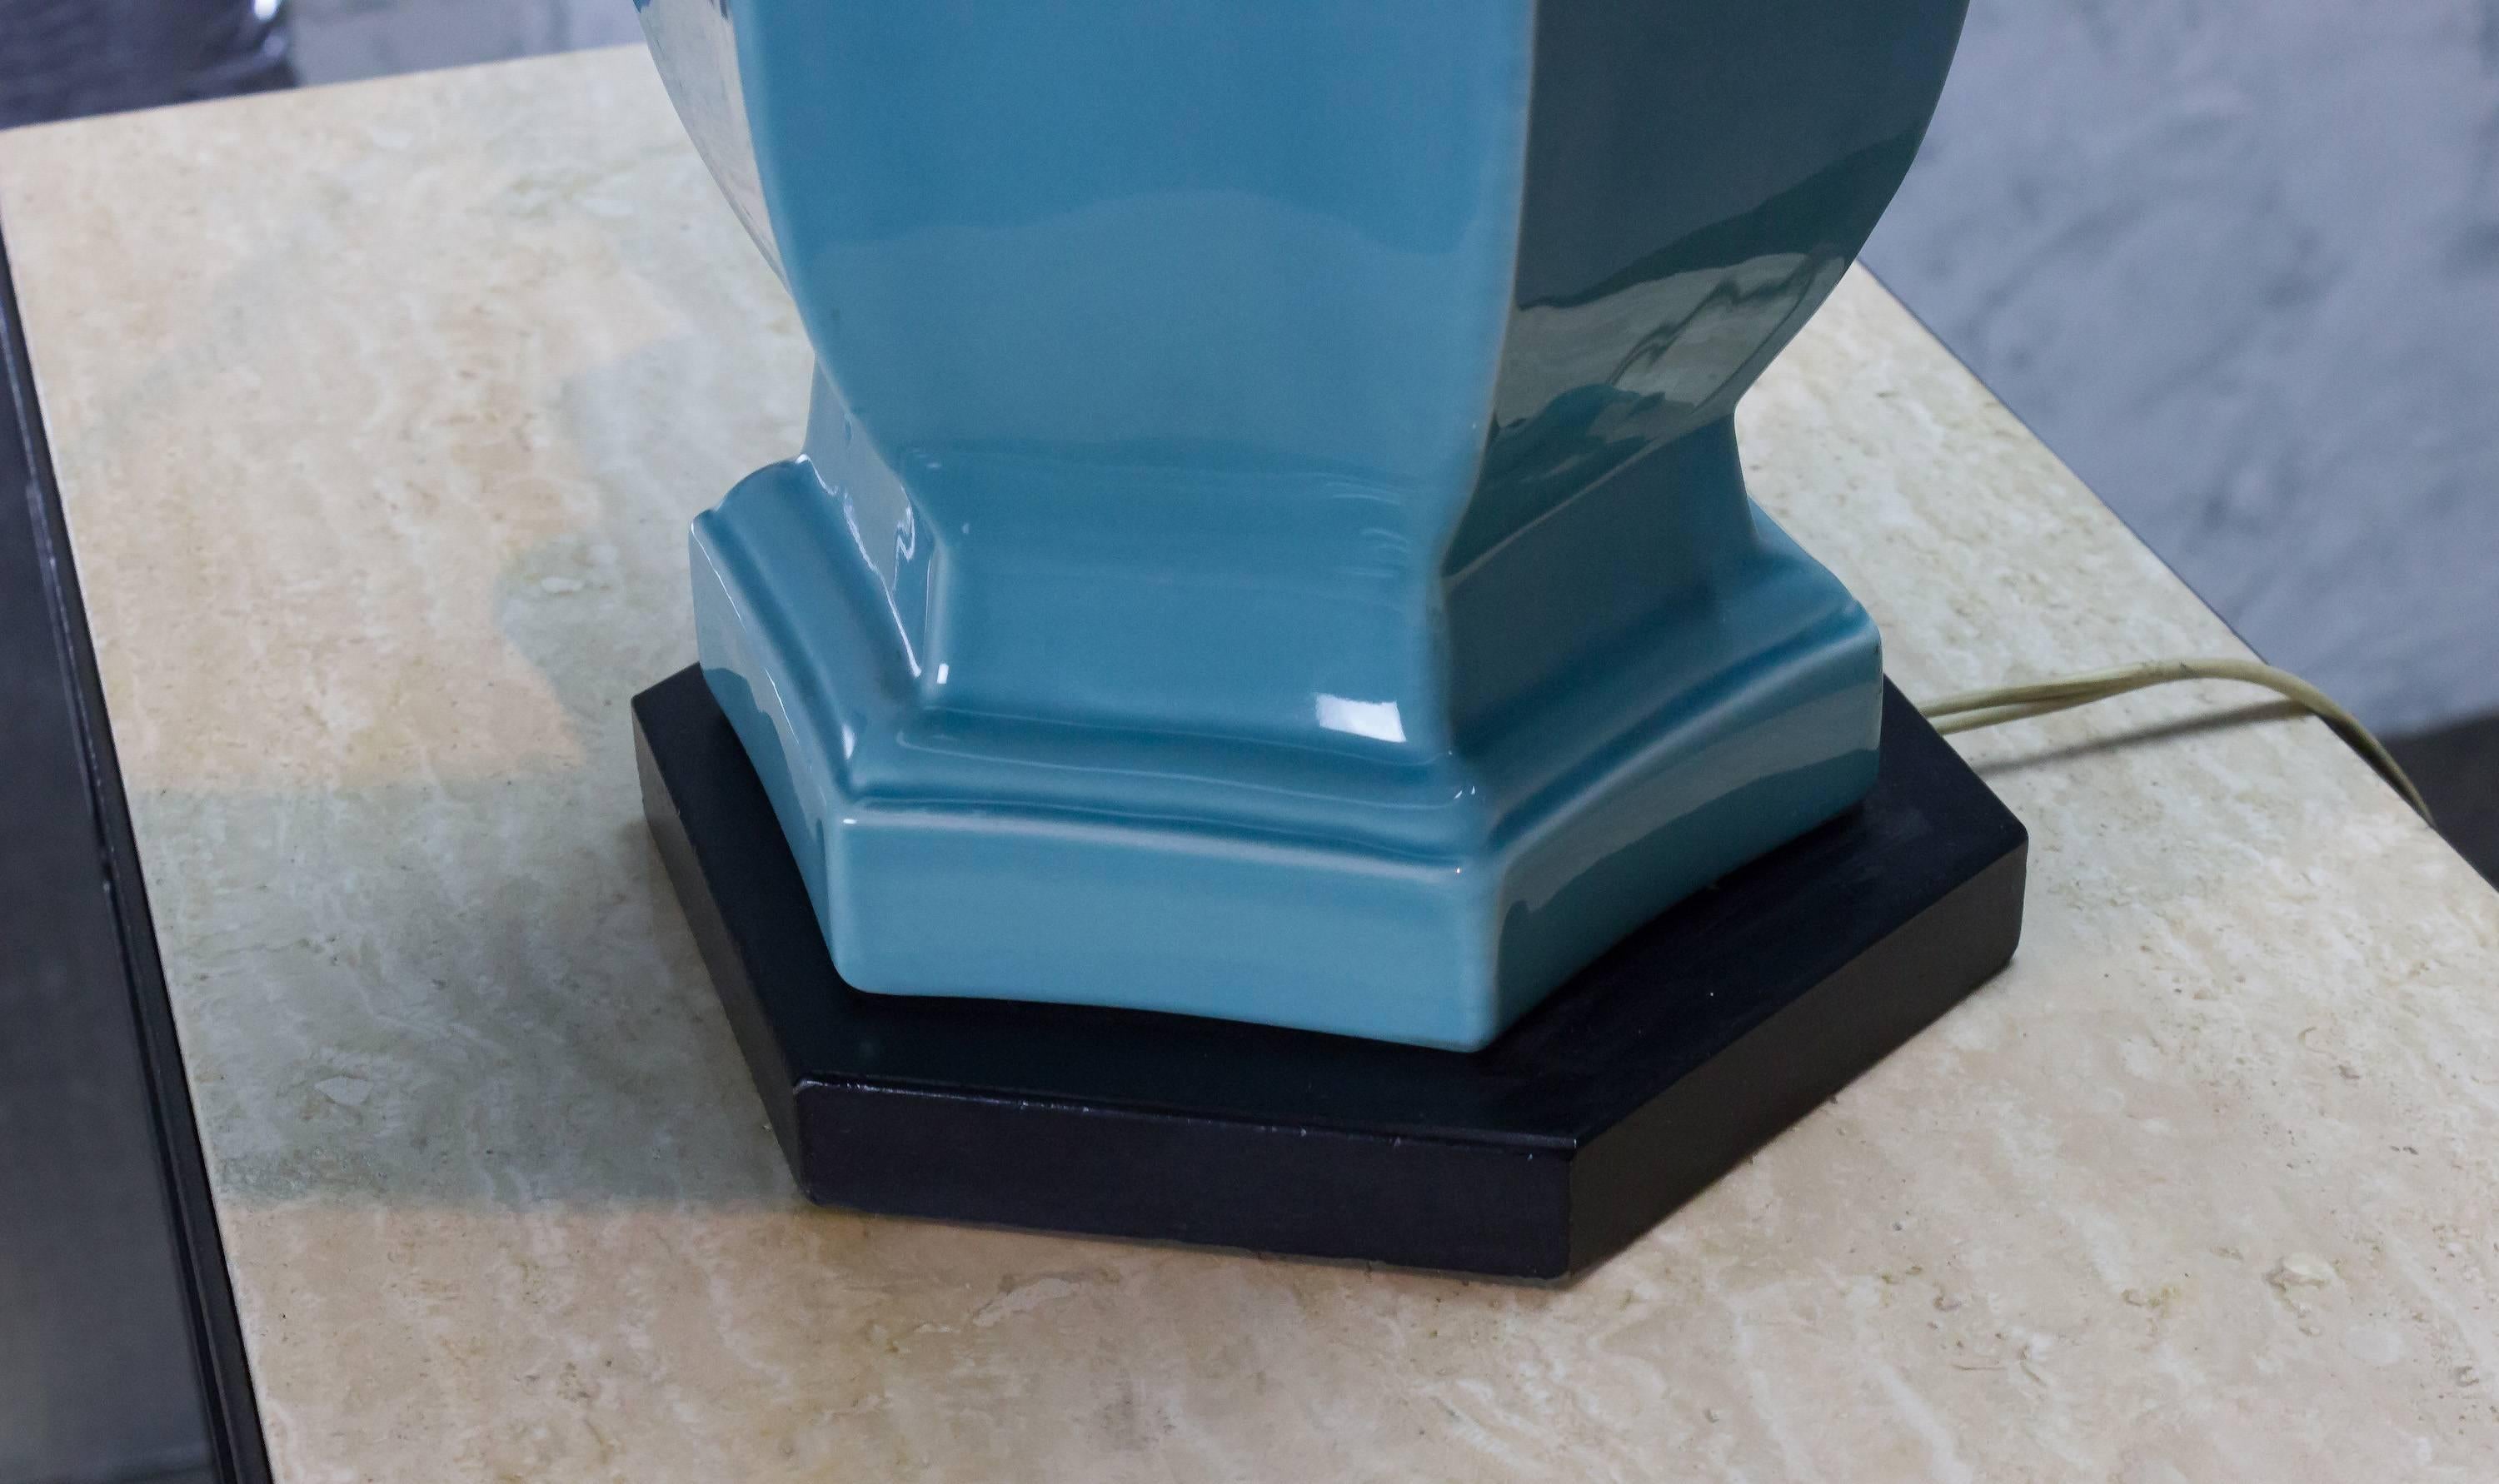 Cette lampe américaine des années 1950 en céramique émaillée a un design unique qui présente un corps en céramique magnifiquement détaillé, fini avec une glaçure très brillante bleu turquoise. La lampe repose sur une élégante base en bois noir qui